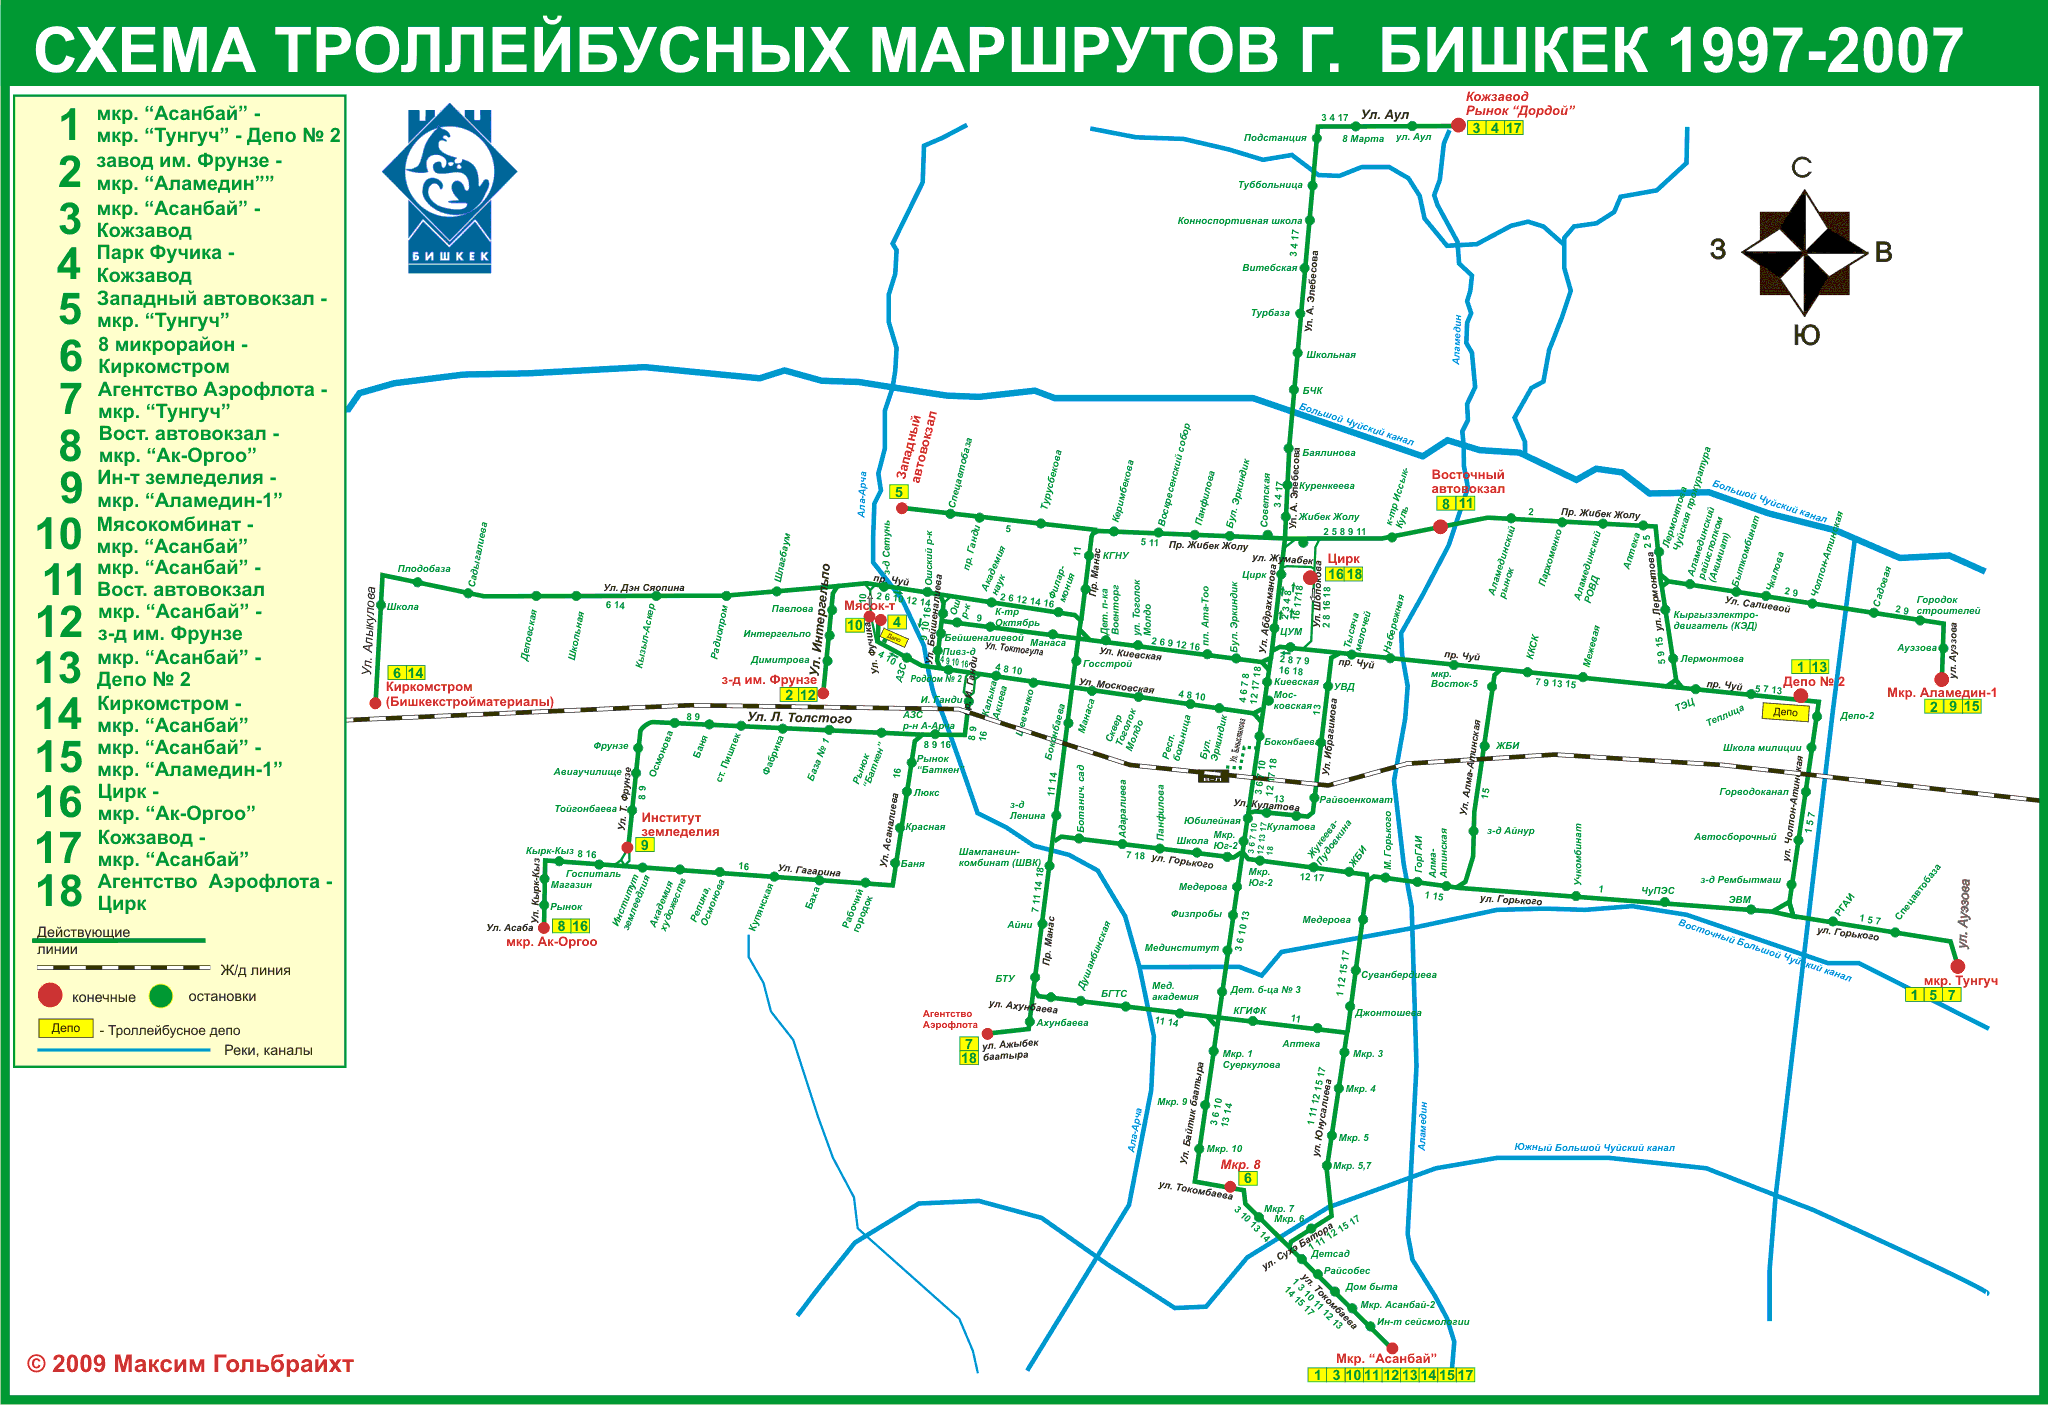 Biszkek — Maps